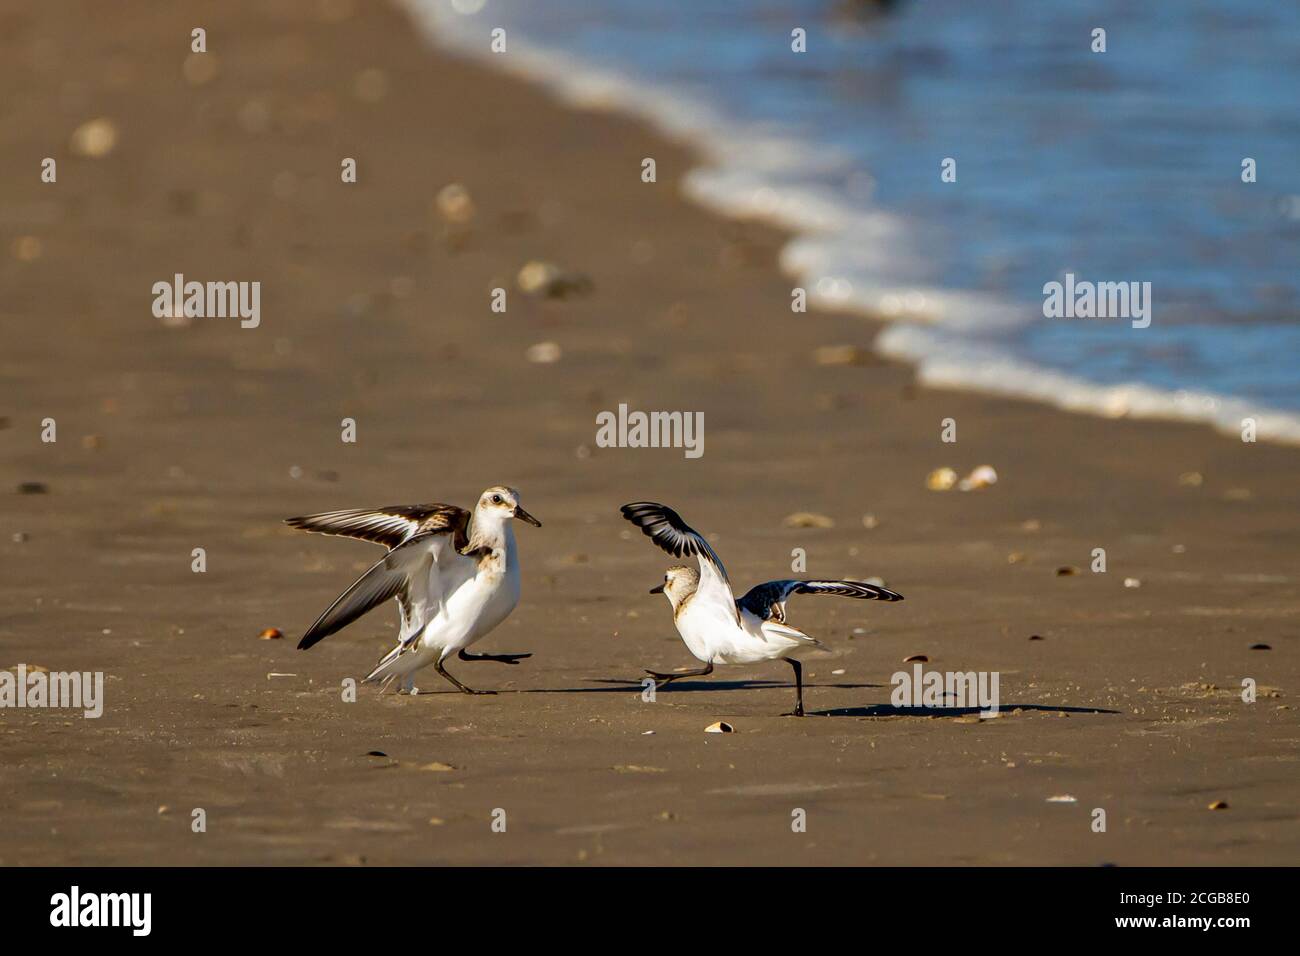 Nahaufnahme eines isolierten Bildes von zwei halbmaschigen Sandpipers (Calidris pusilla), die kämpfen. Dies sind sehr territoriale Vögel und Männchen kämpfen oft miteinander Stockfoto